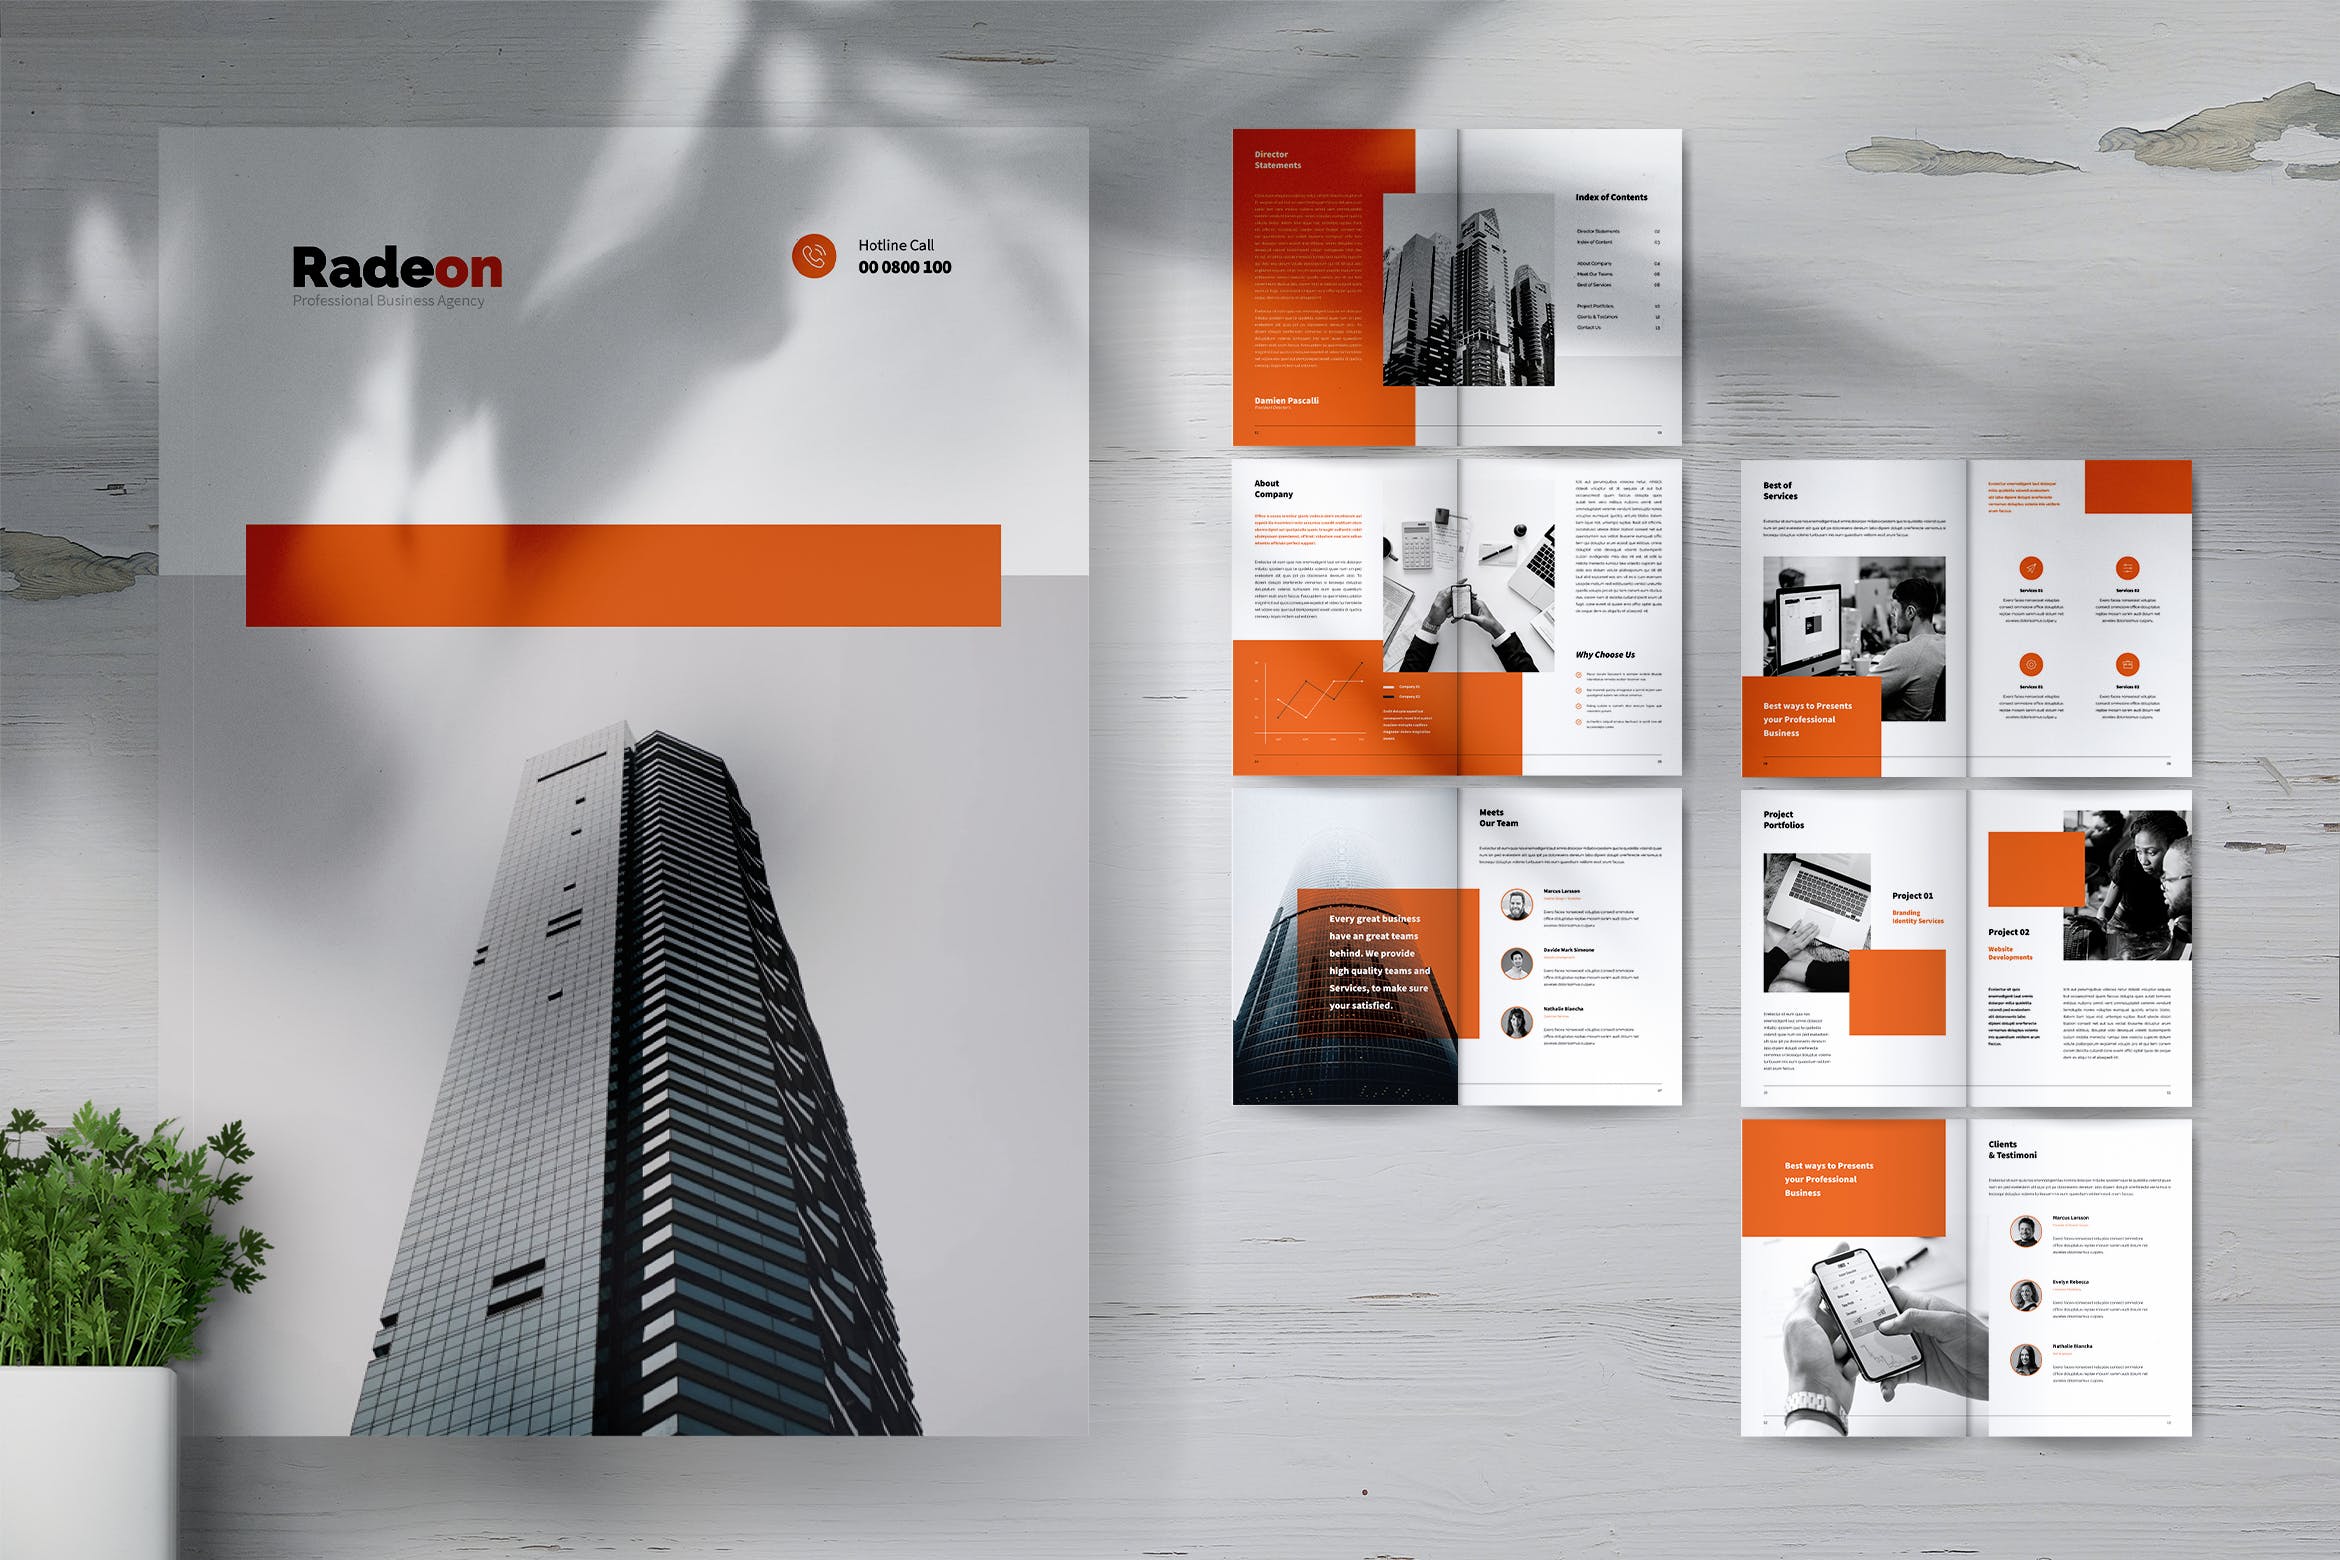 创意代理公司简介宣传画册&服务手册设计模板 RADEON Creative Agency Company Profile Brochures插图